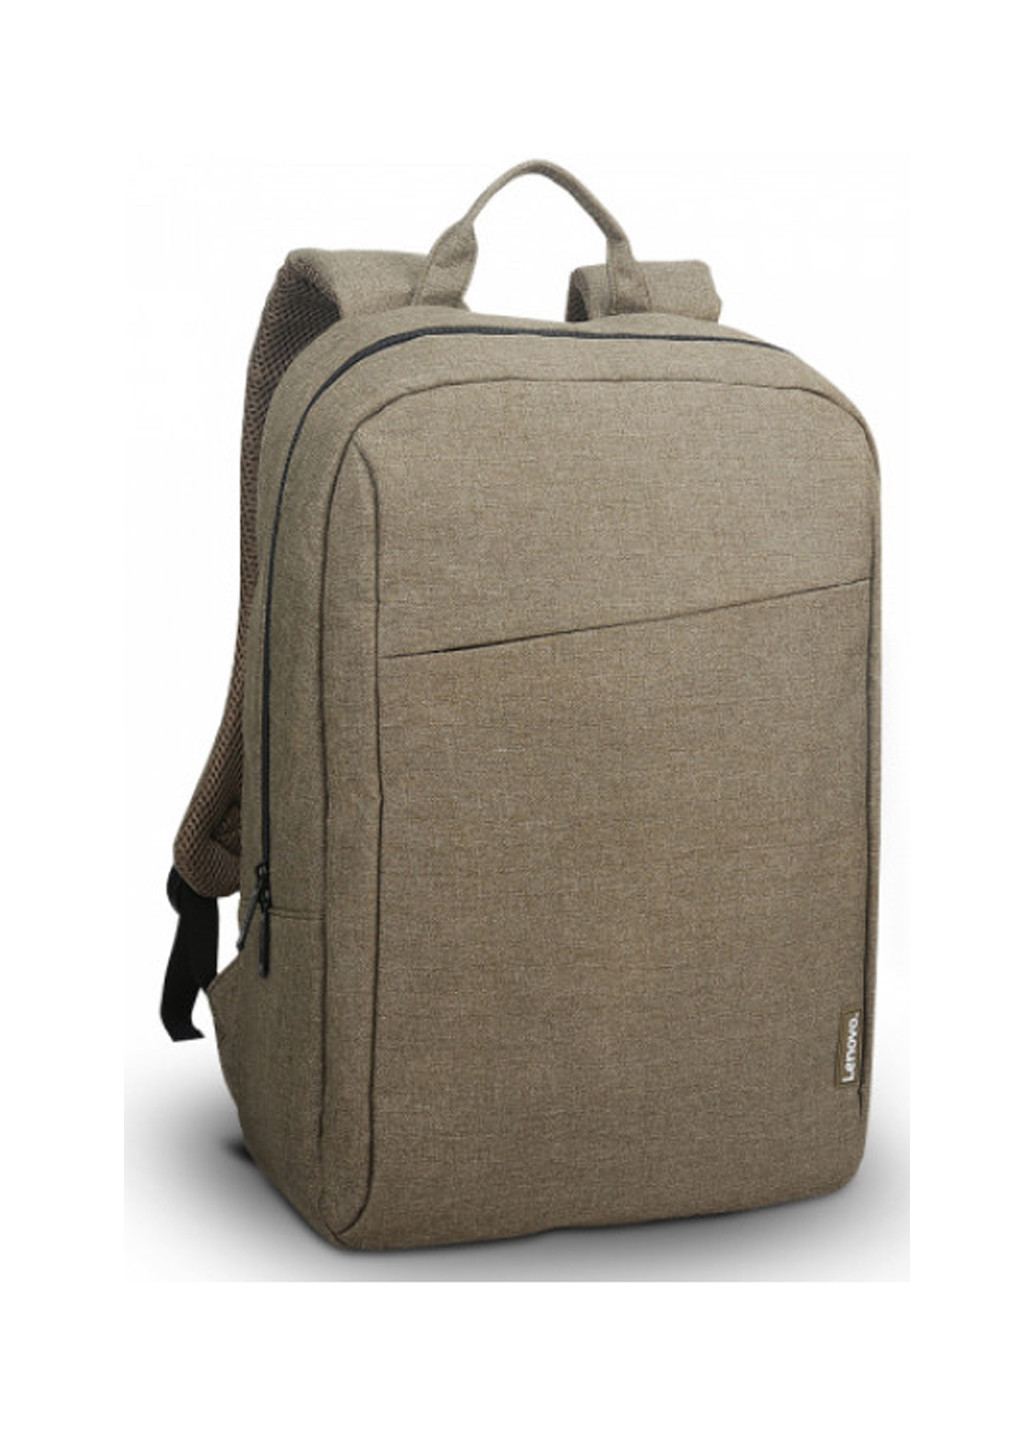 Рюкзак Casual B210 для ноутбука 15,6 зелений (GX40Q17228) Lenovo backpack b210 casual 15.6" green (gx40q17228) (137227693)